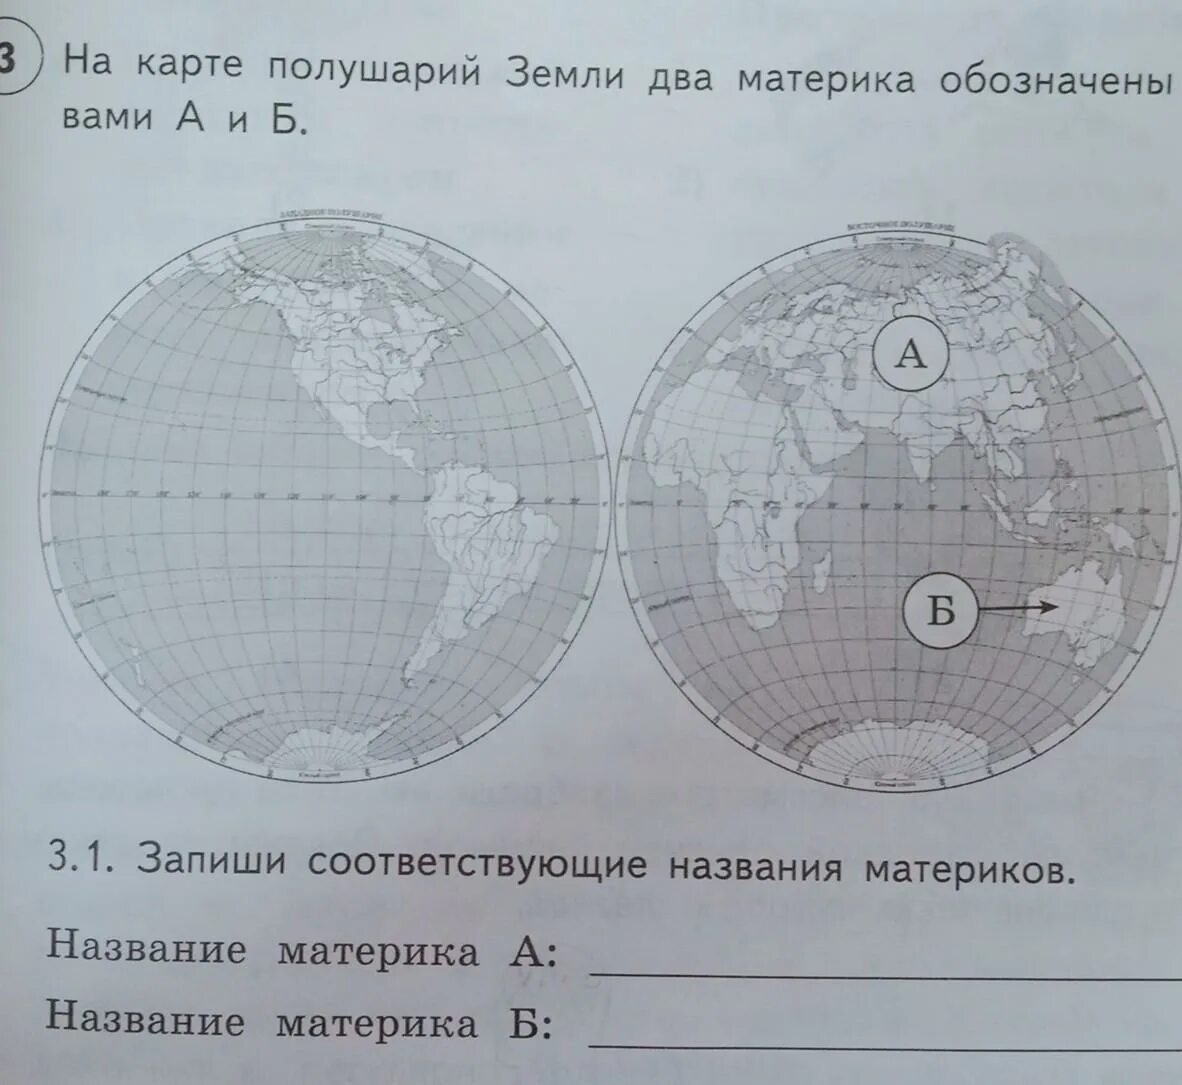 На карте полушарий земли два материка. Карта полушарий с названиями материков. На карте полушарий земли два ма. На карте земли два материка обозначены. Какой материк обозначен буквой б